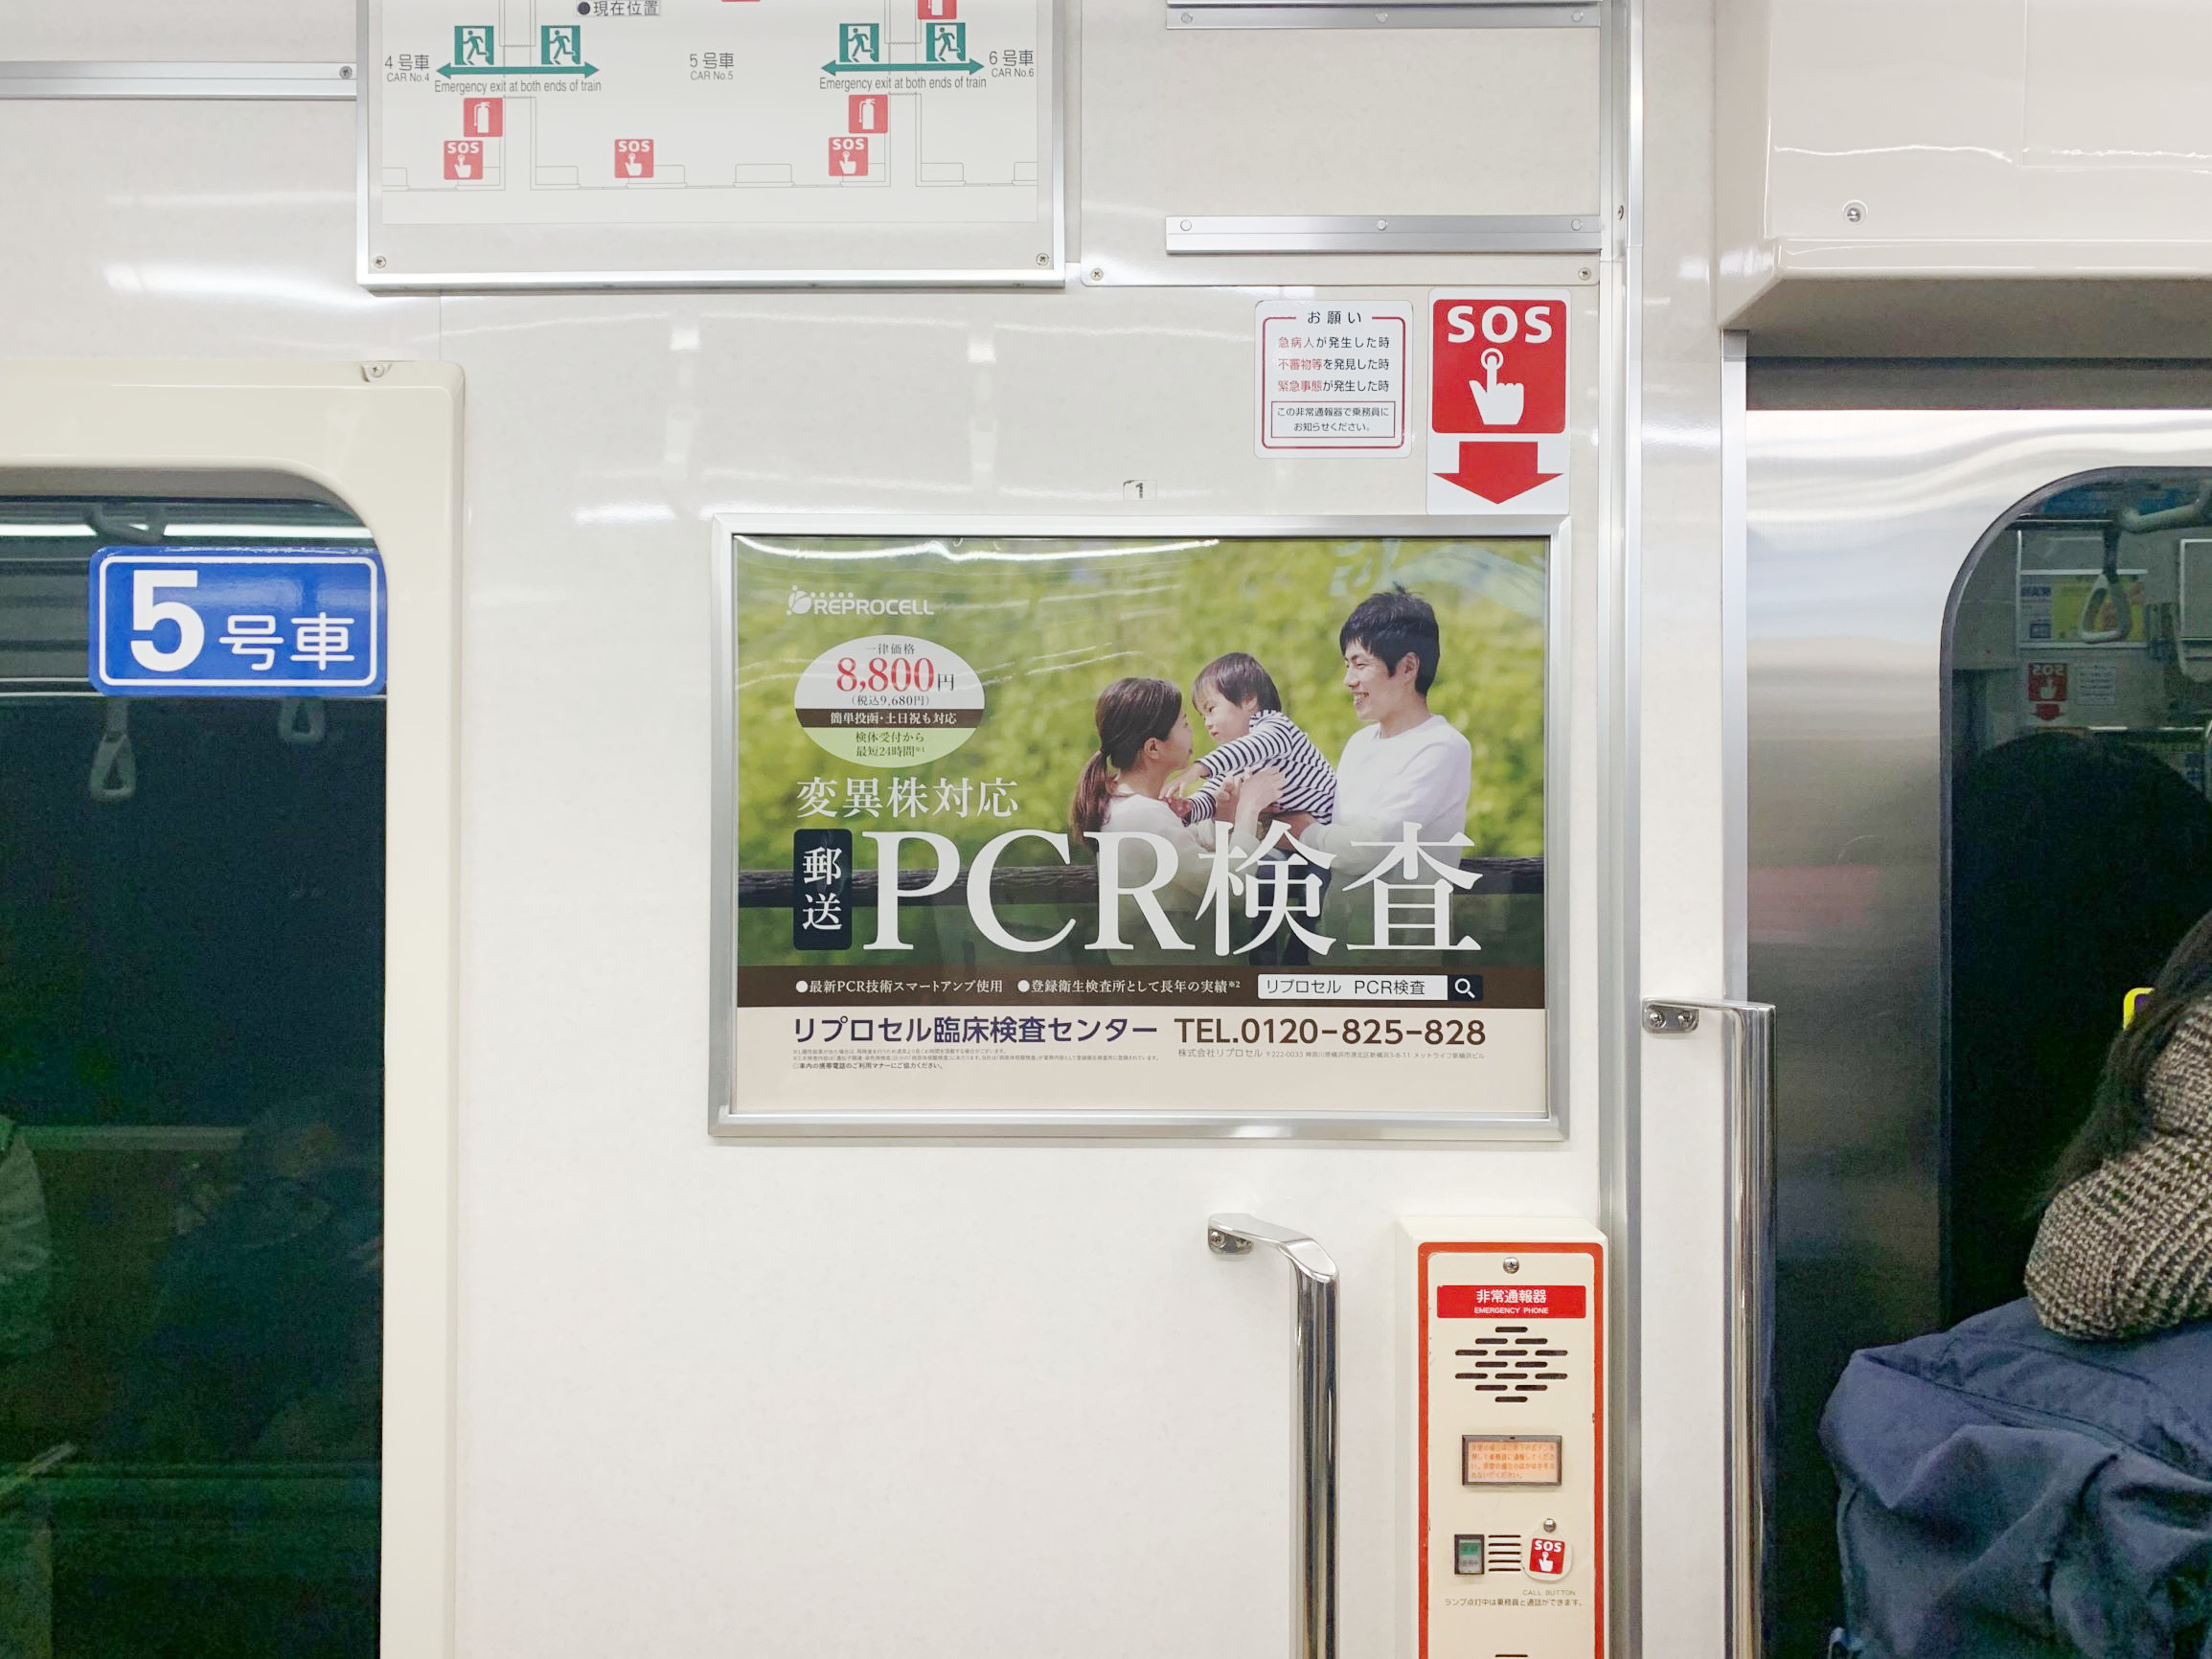 横浜市営地下鉄ブルーライン ドア横広告